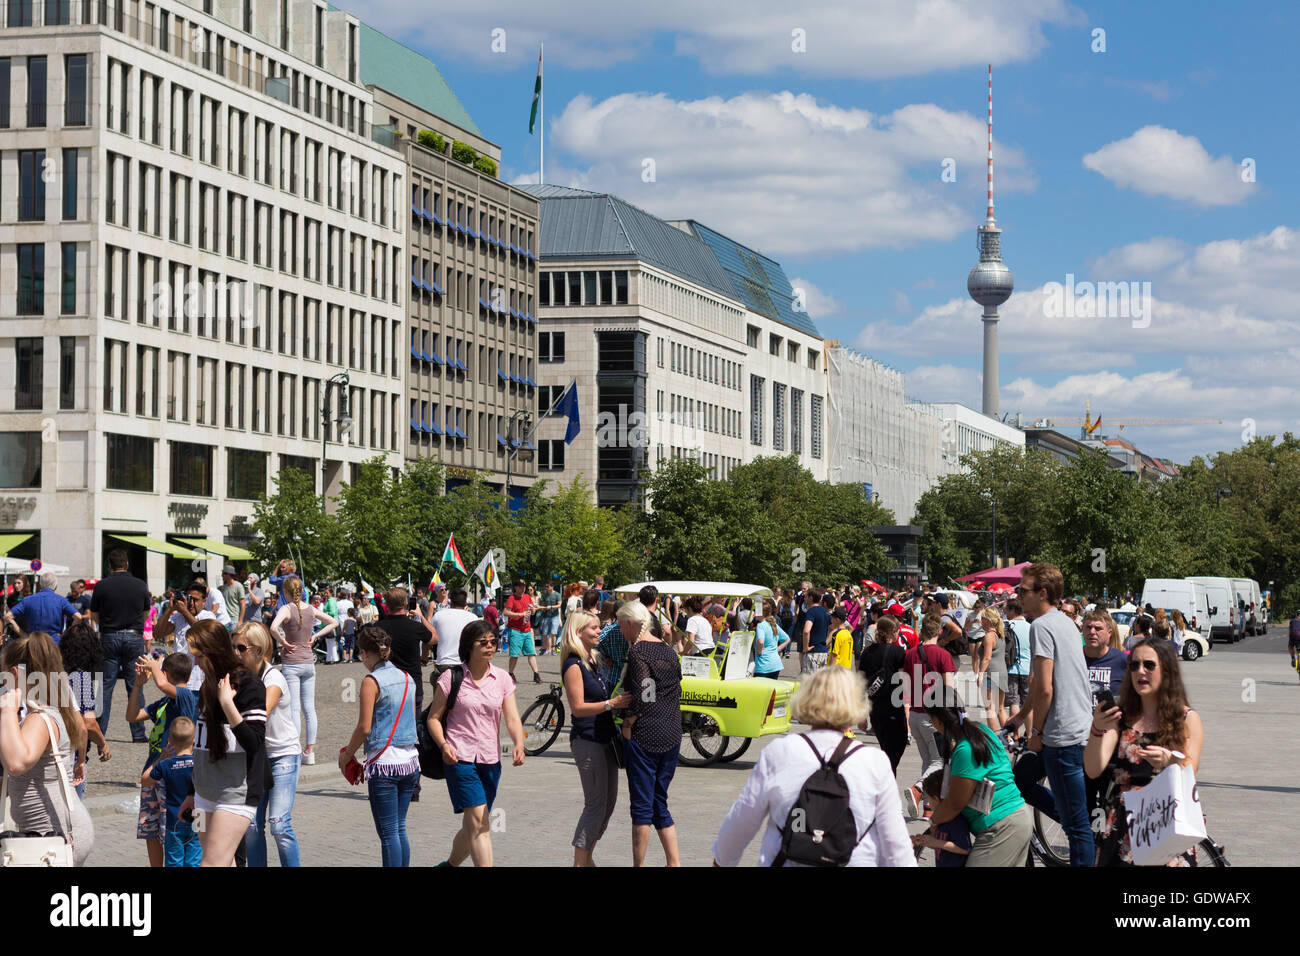 Viele Menschen / Touristen überfüllten Pariser Platz in Berlin, Deutschland. Stockfoto